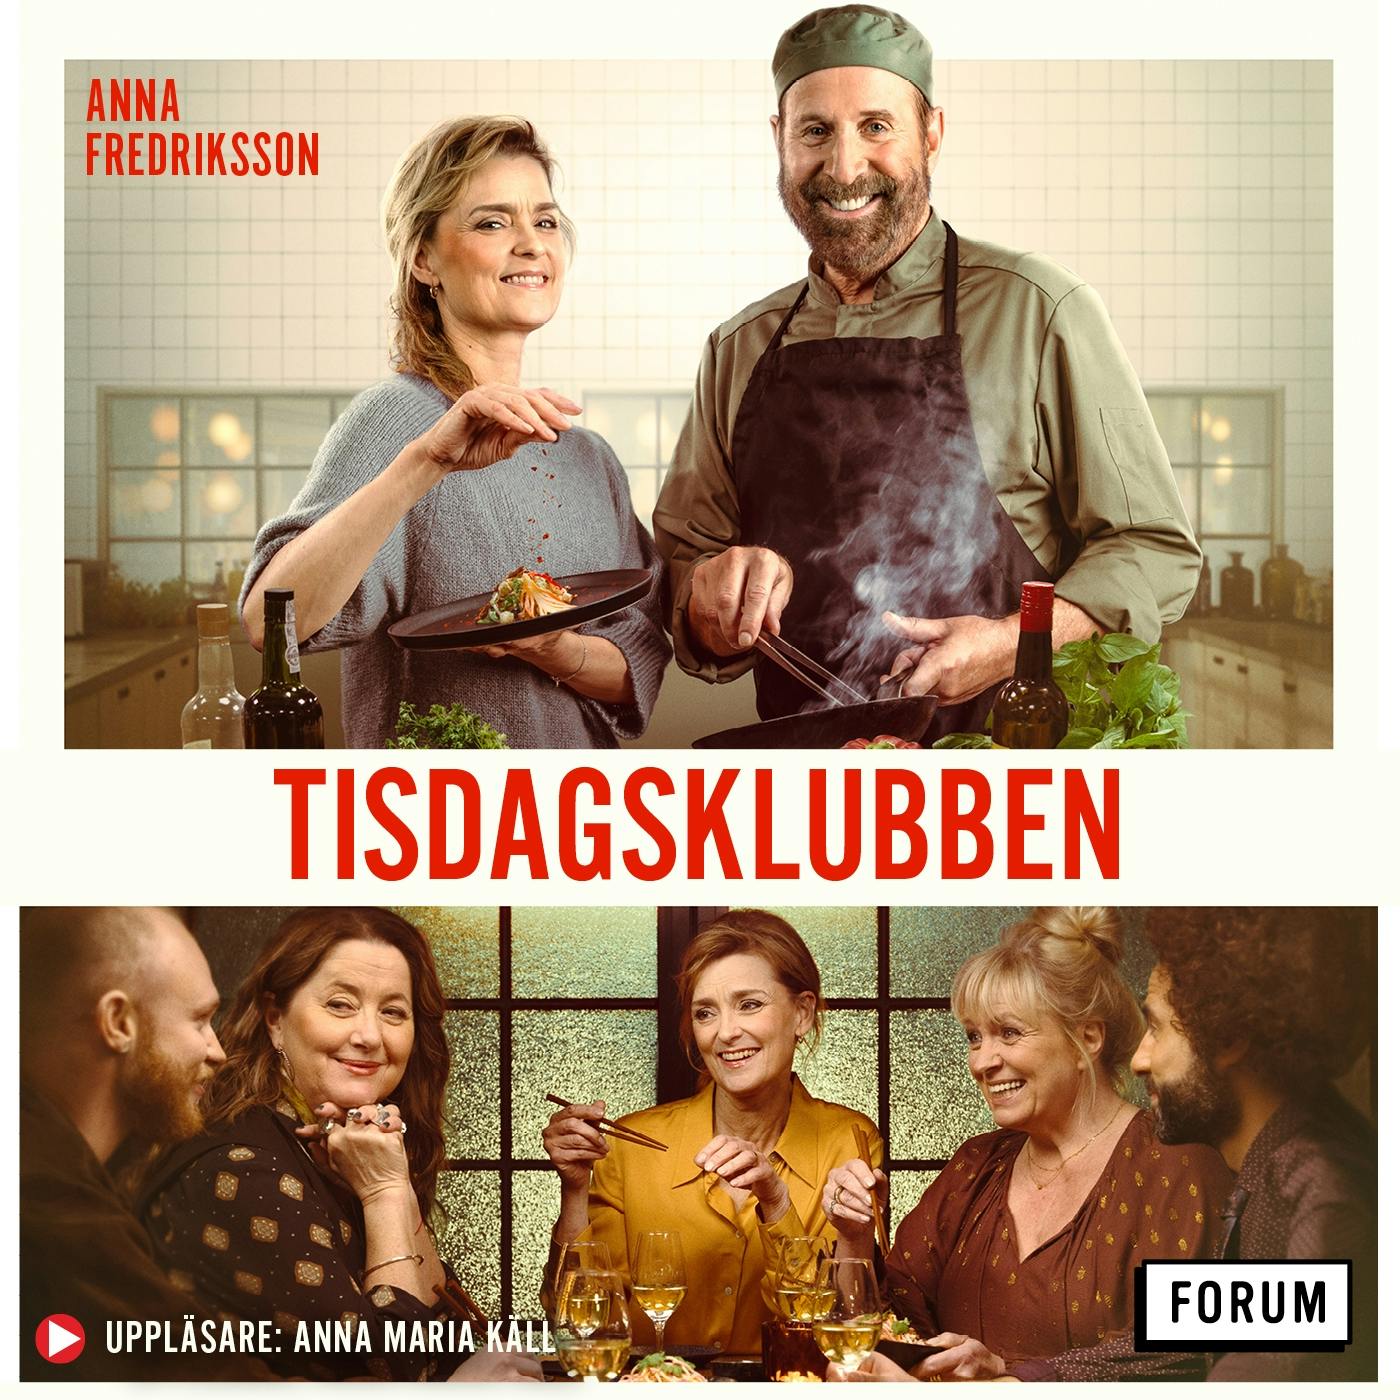 Tisdagsklubben - Anna Fredriksson